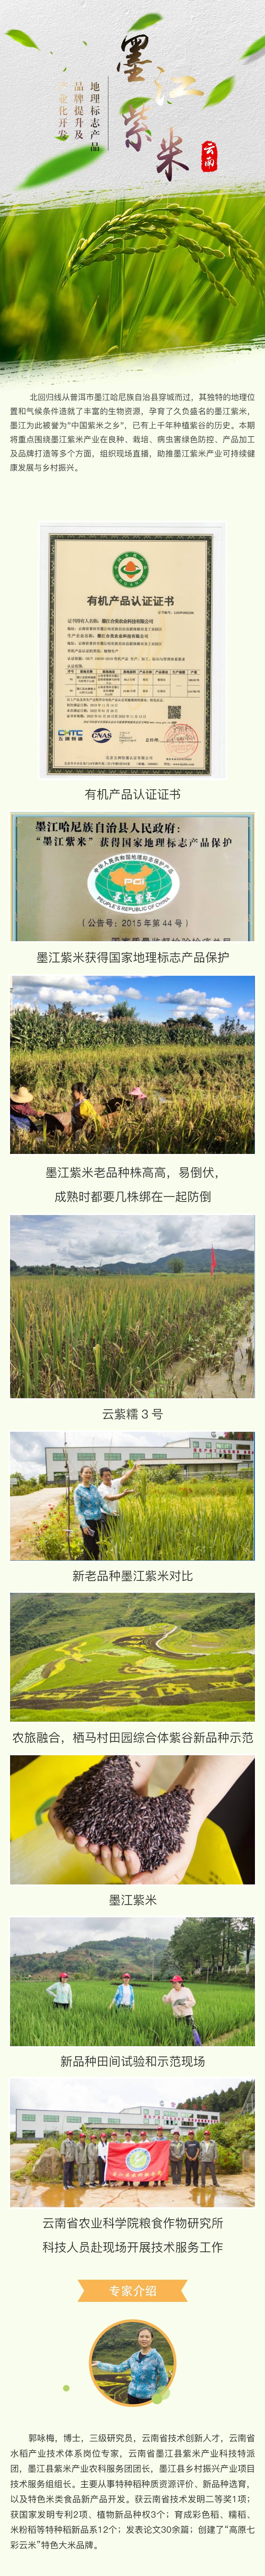 地理标志产品“墨江紫米”品牌提升及产业化开发.jpg